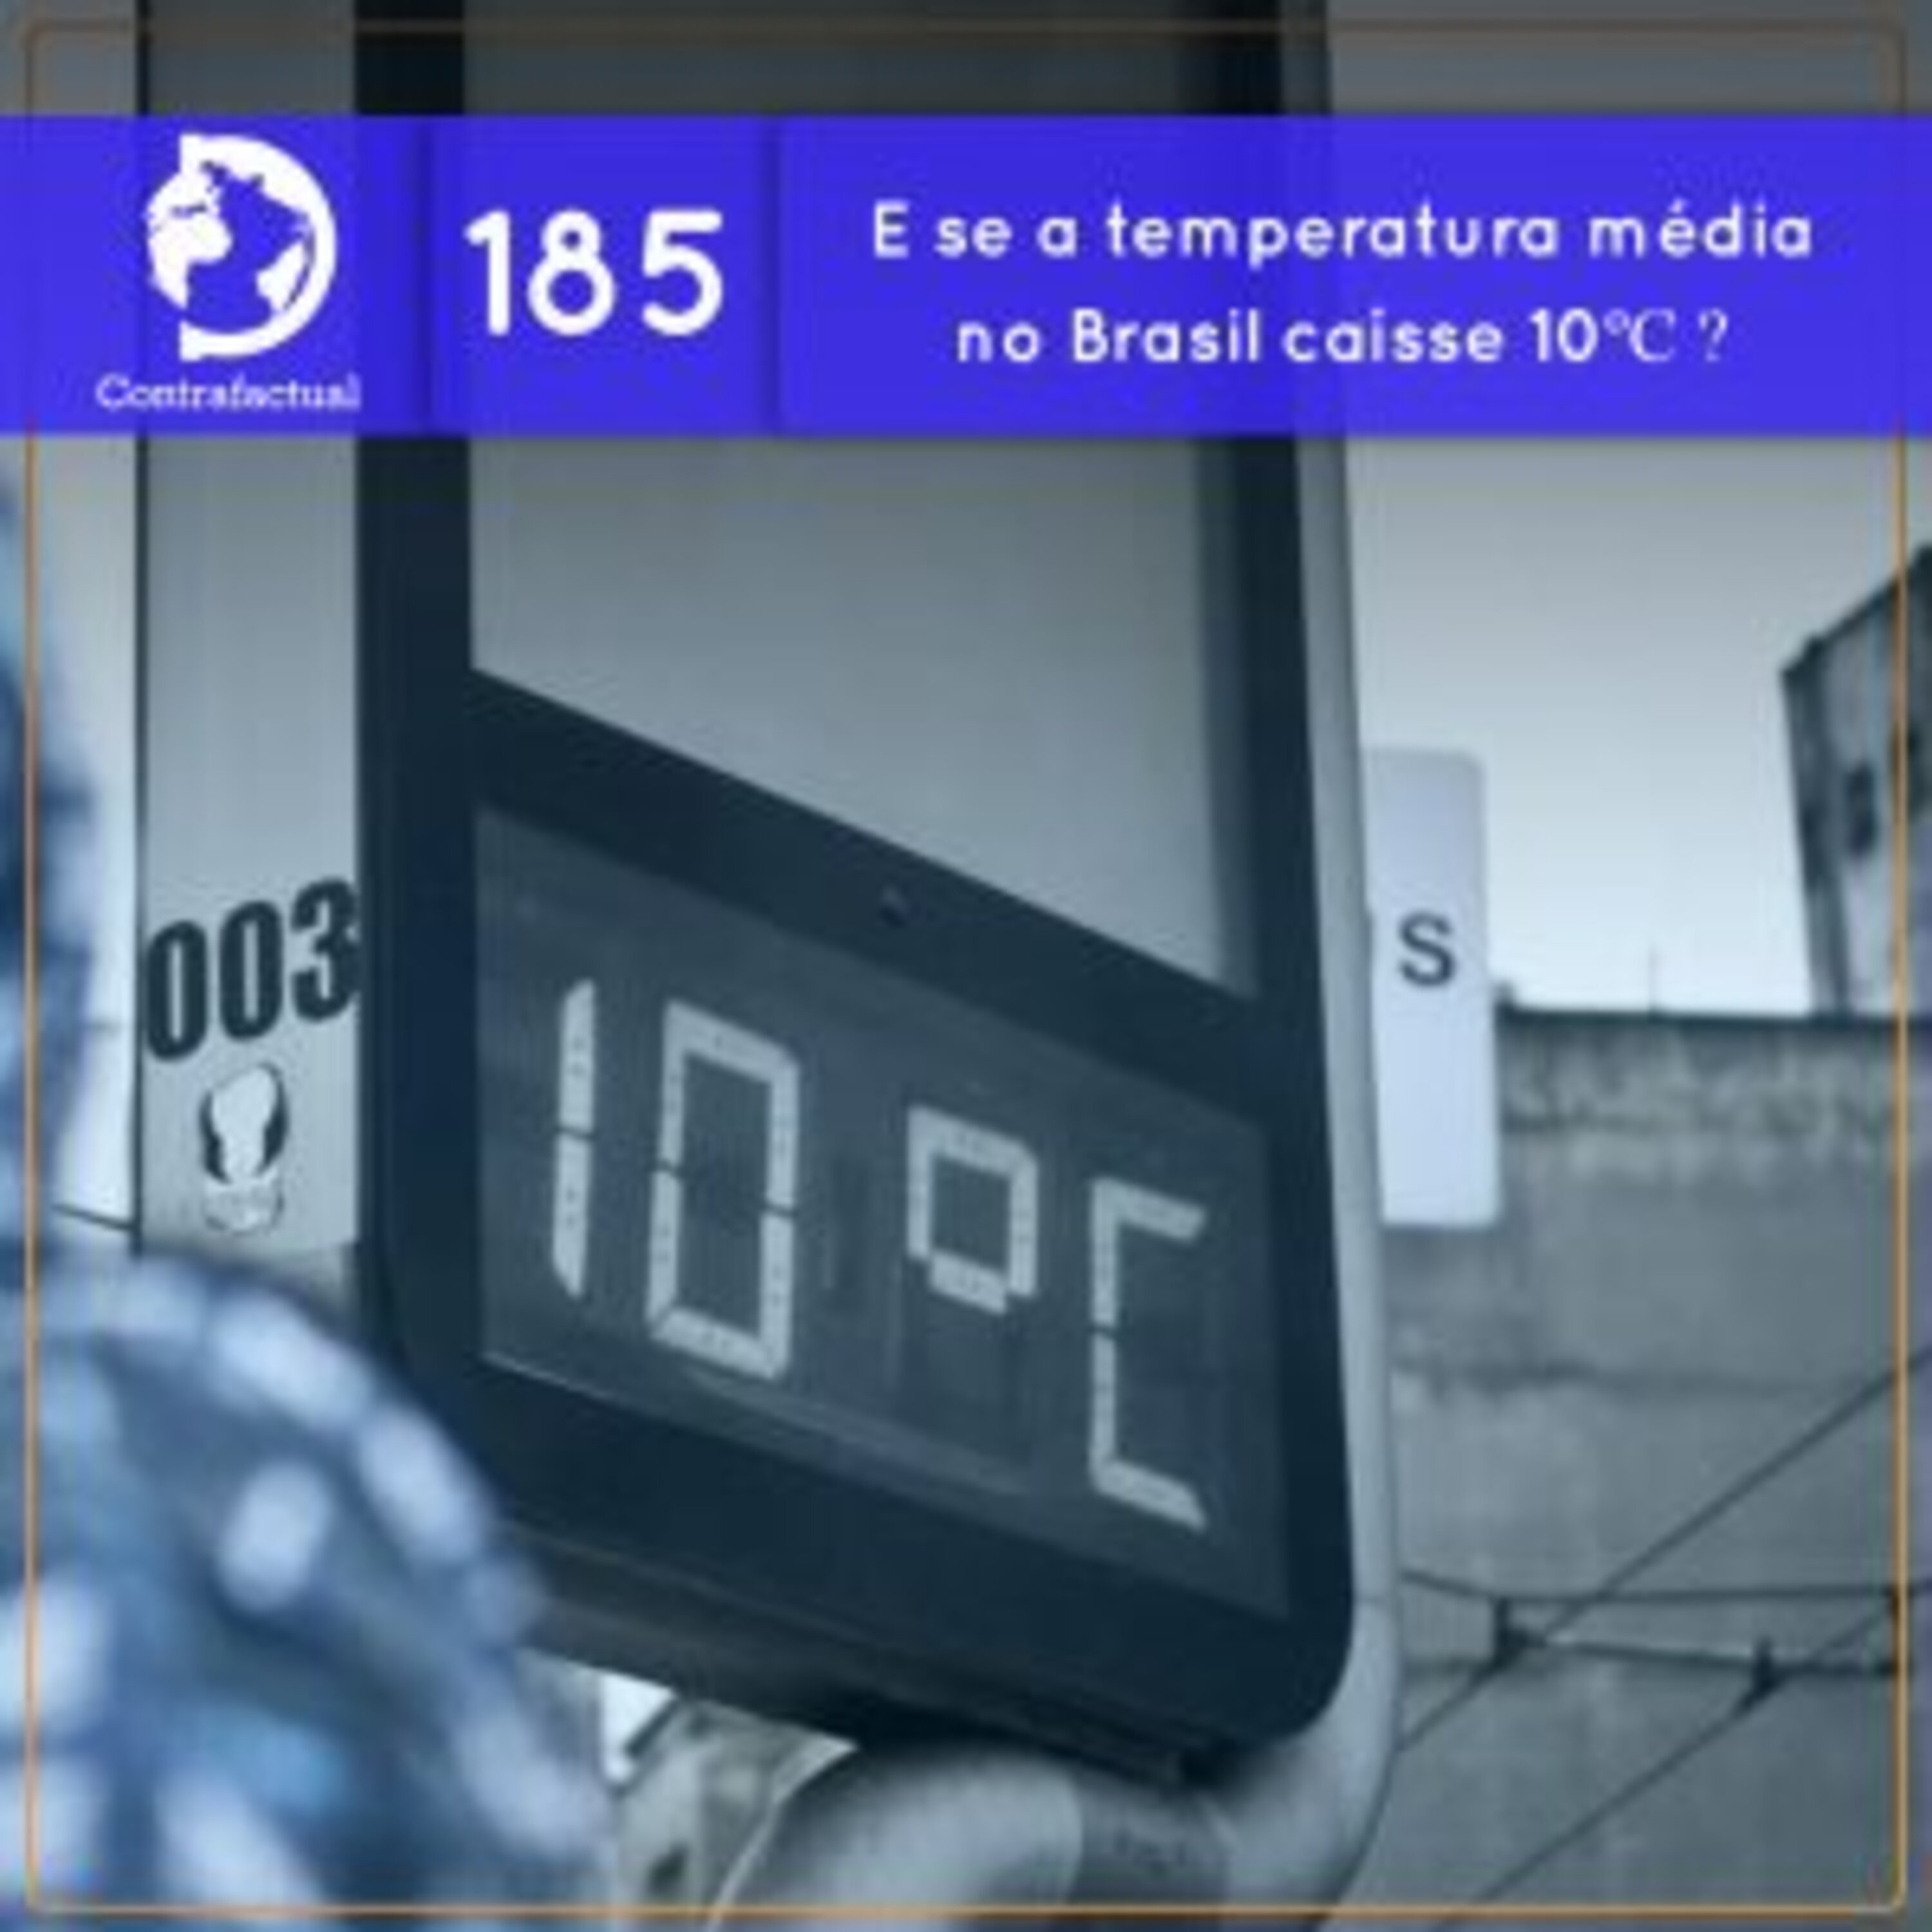 E se a temperatura média no Brasil caísse 10ºC ? (Contrafactual #185)